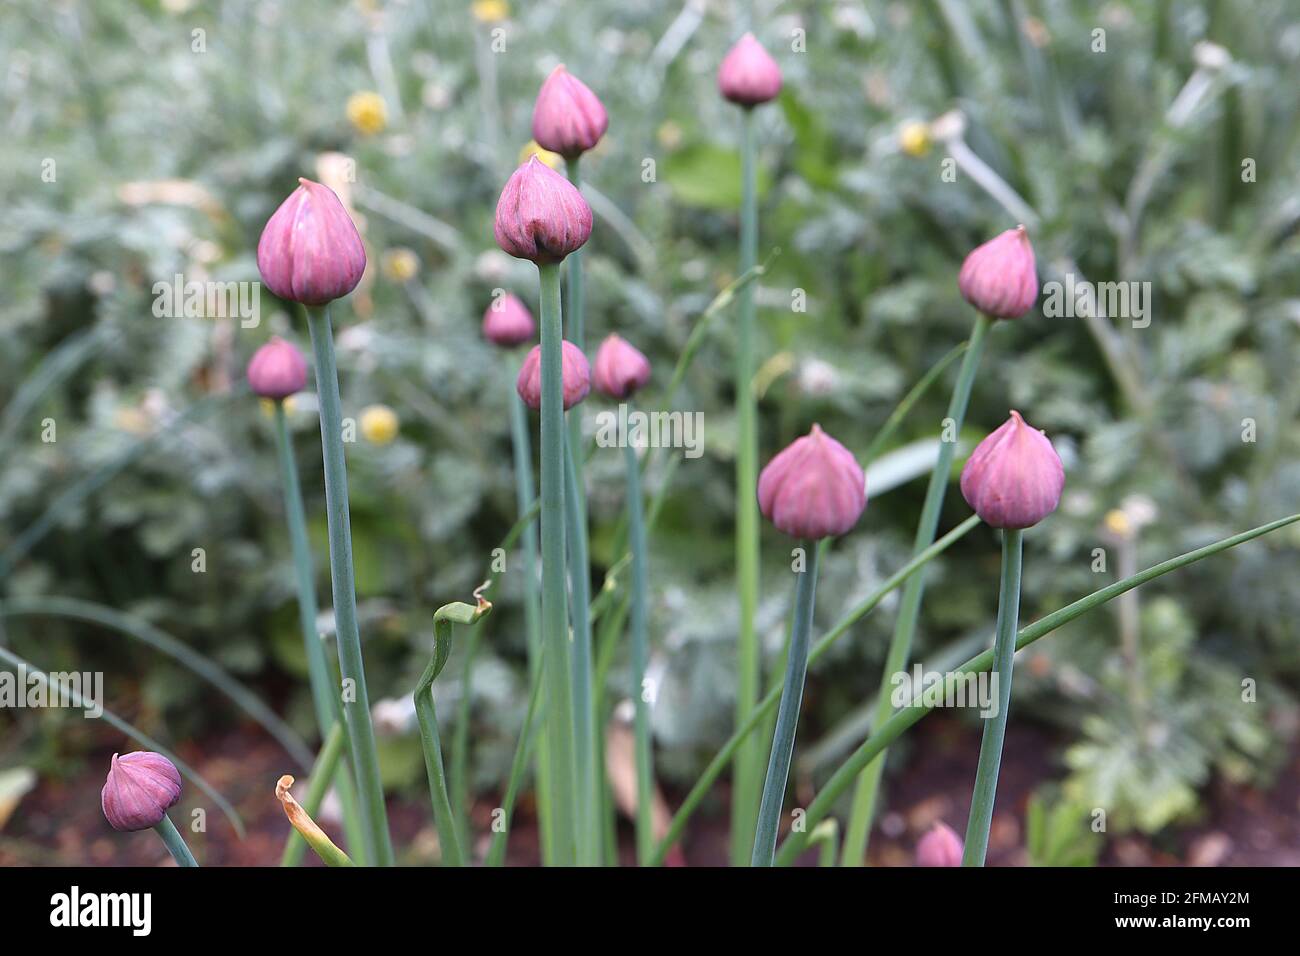 Allium schoenoprasum Buds de fleurs de ciboulette – groupe de petits bourgeons de fleurs violettes en forme de dôme d'oignon, mai, Angleterre, Royaume-Uni Banque D'Images